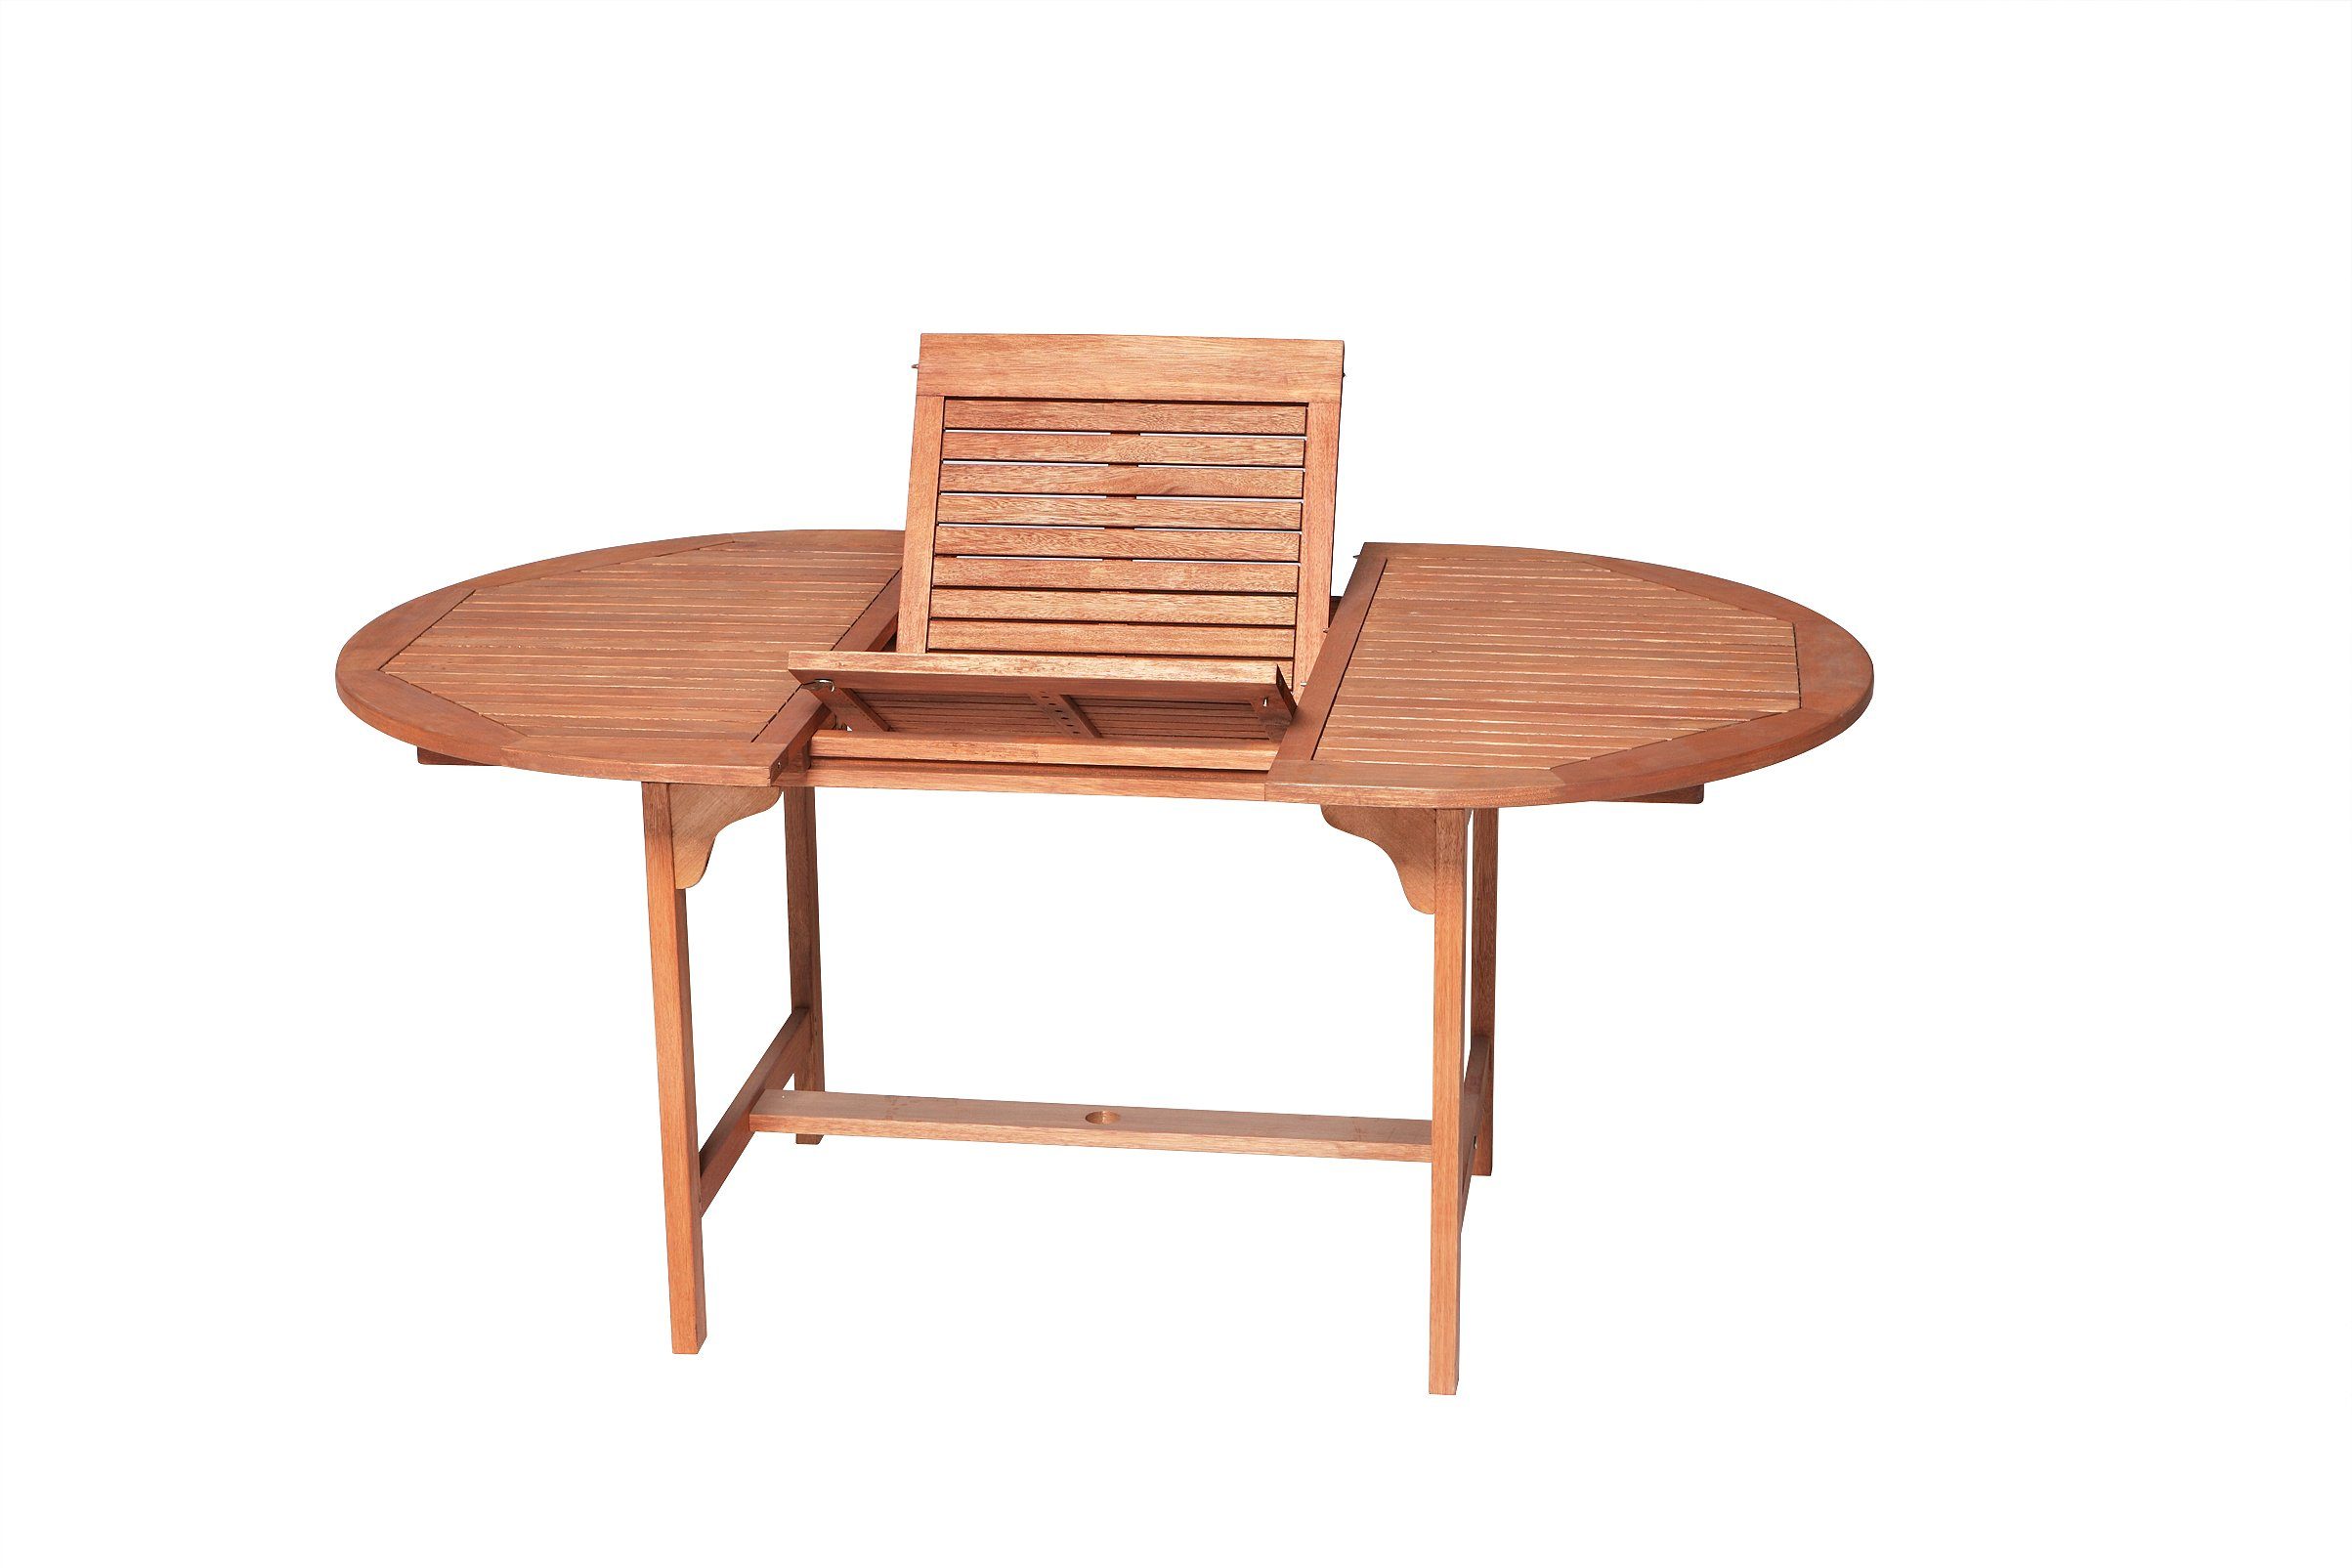 MERXX Gartentisch TYLER, B 120 x T 100 cm, Eukalyptus geölt, Braun, mit  Flügelmechanismus, Platz für mindestens sechs Personen